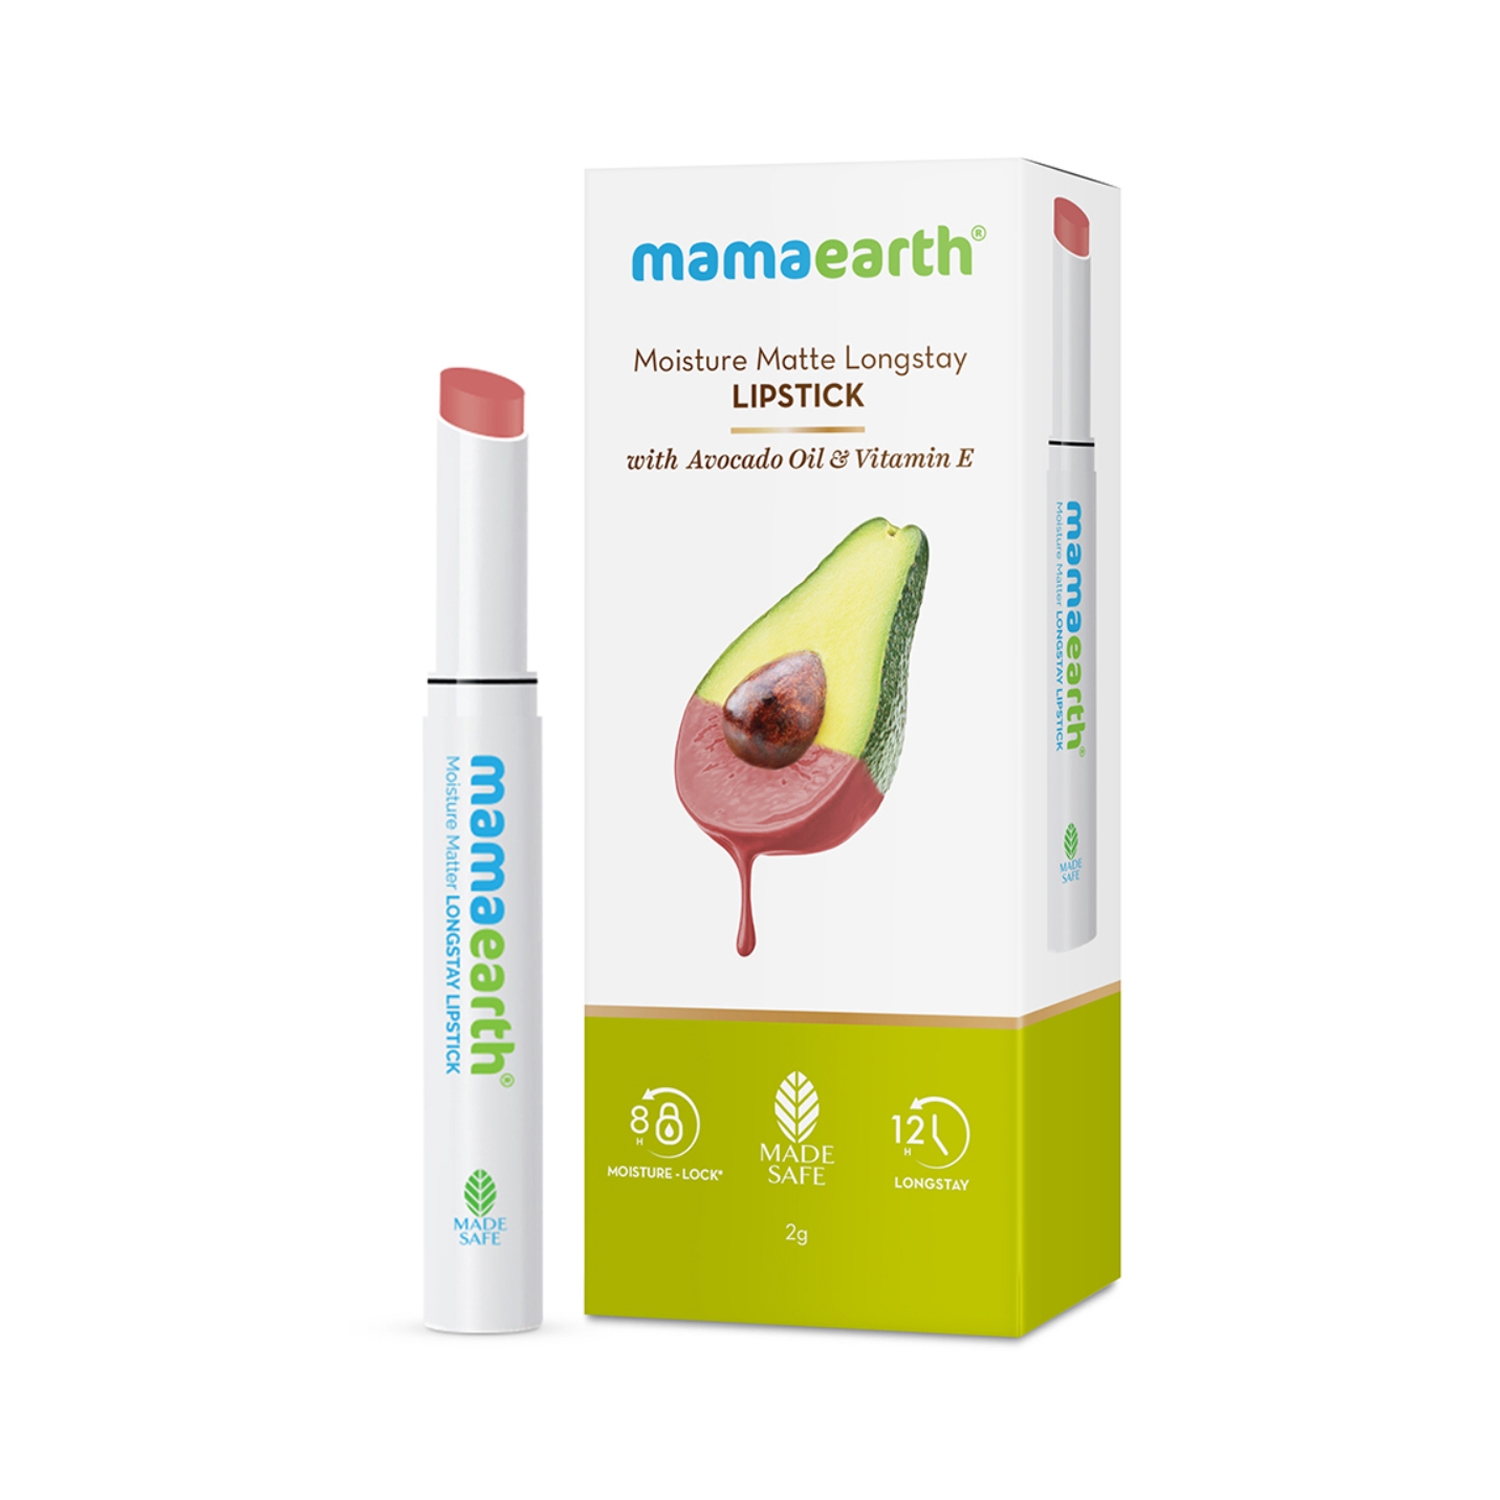 Mamaearth | Mamaearth Moisture Matte Longstay Lipstick With Avocado Oil & Vitamin E - 05 Bubblegum Nude (2g)